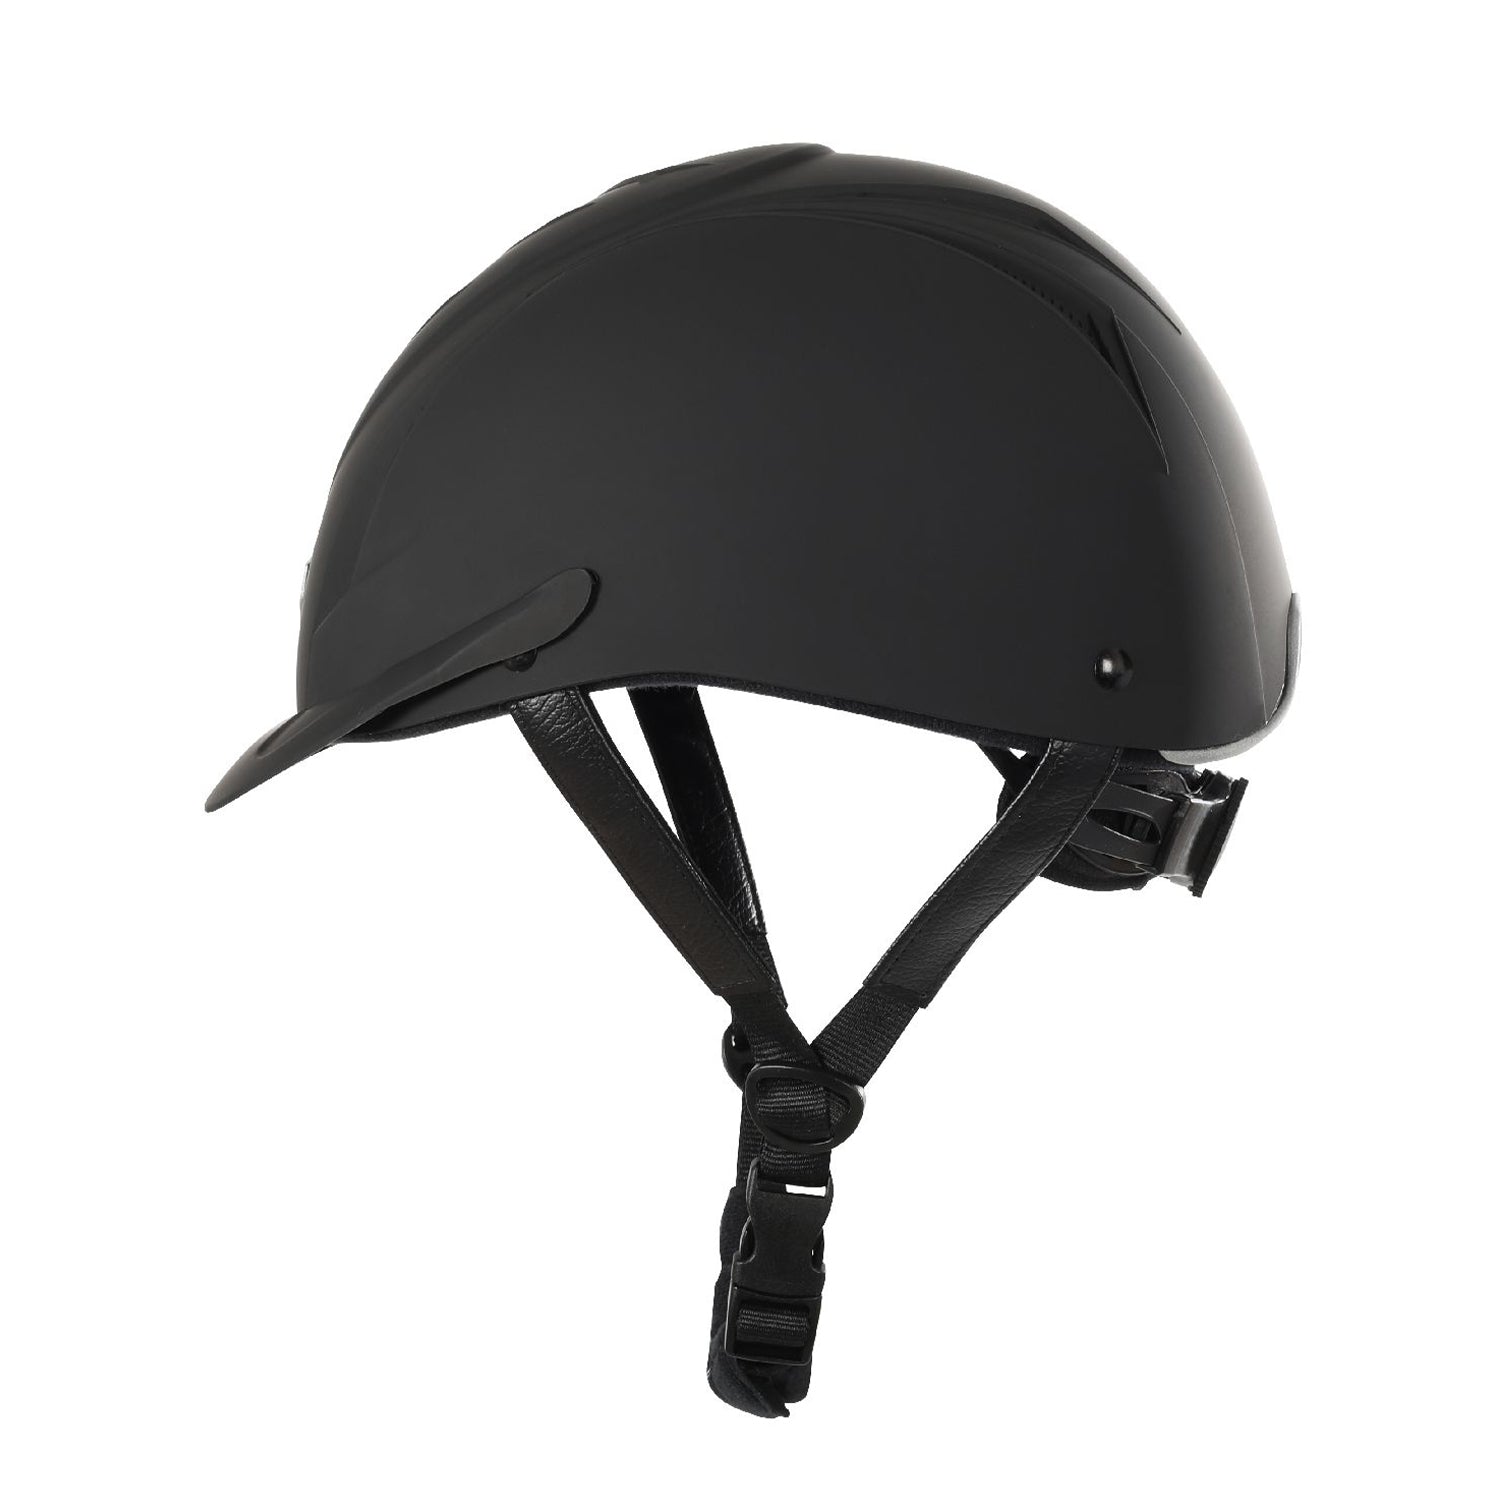 Adjustable riding helmet